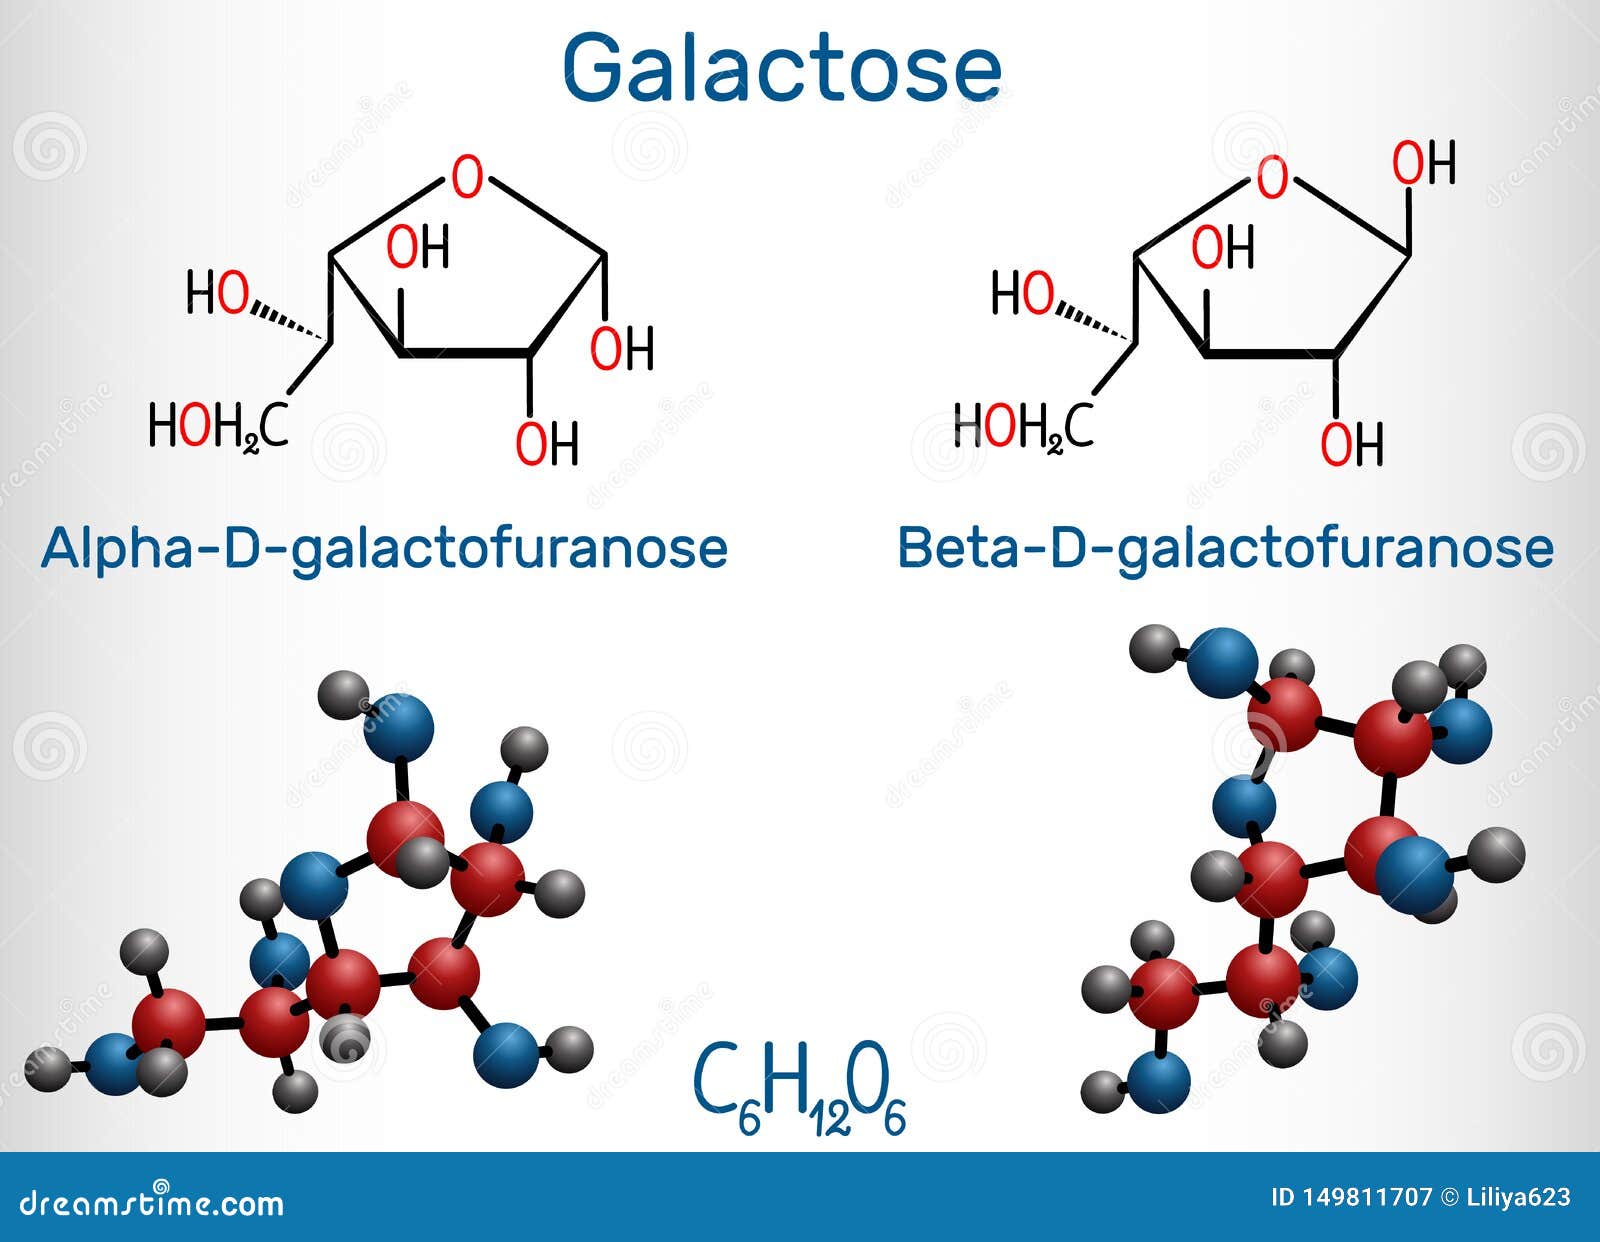 α-D-Glucose as a non-radioactive MRS tracer for metabolic studies of the  brain | Scientific Reports